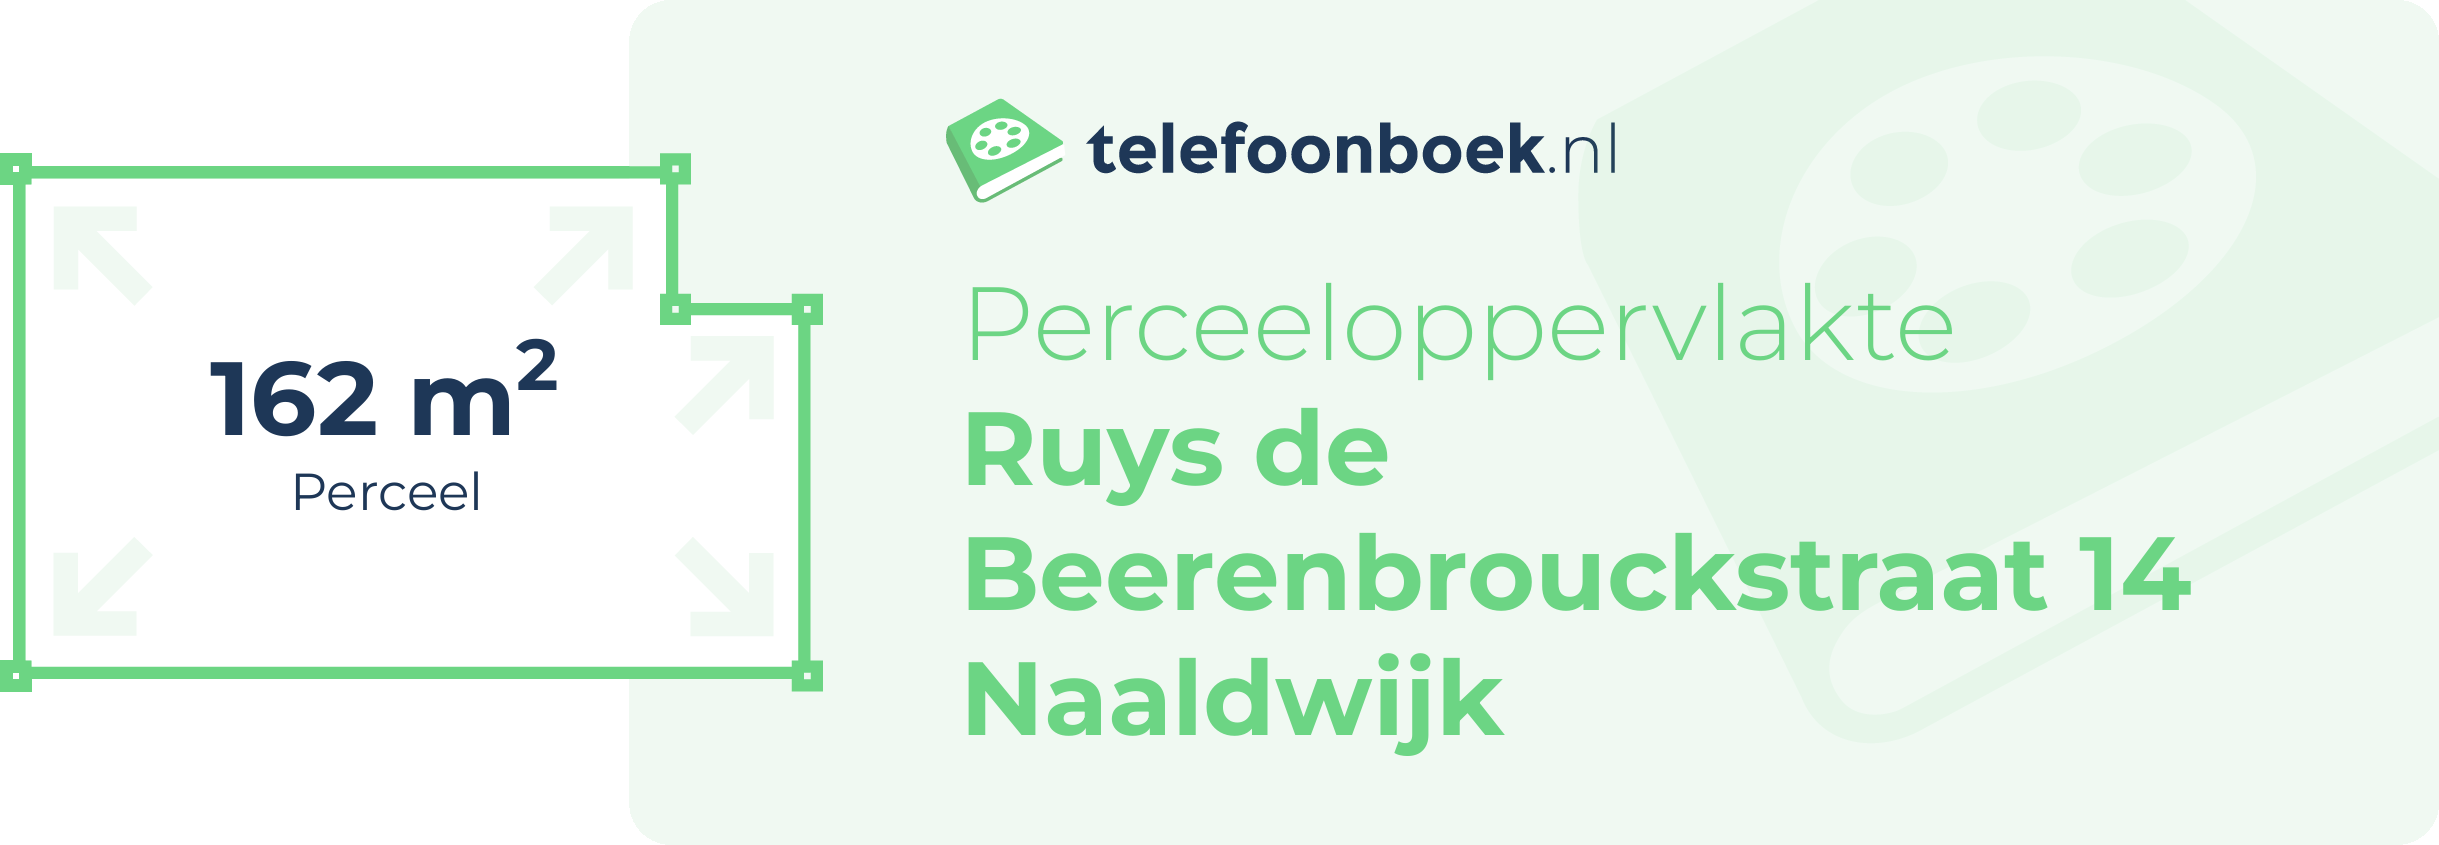 Perceeloppervlakte Ruys De Beerenbrouckstraat 14 Naaldwijk